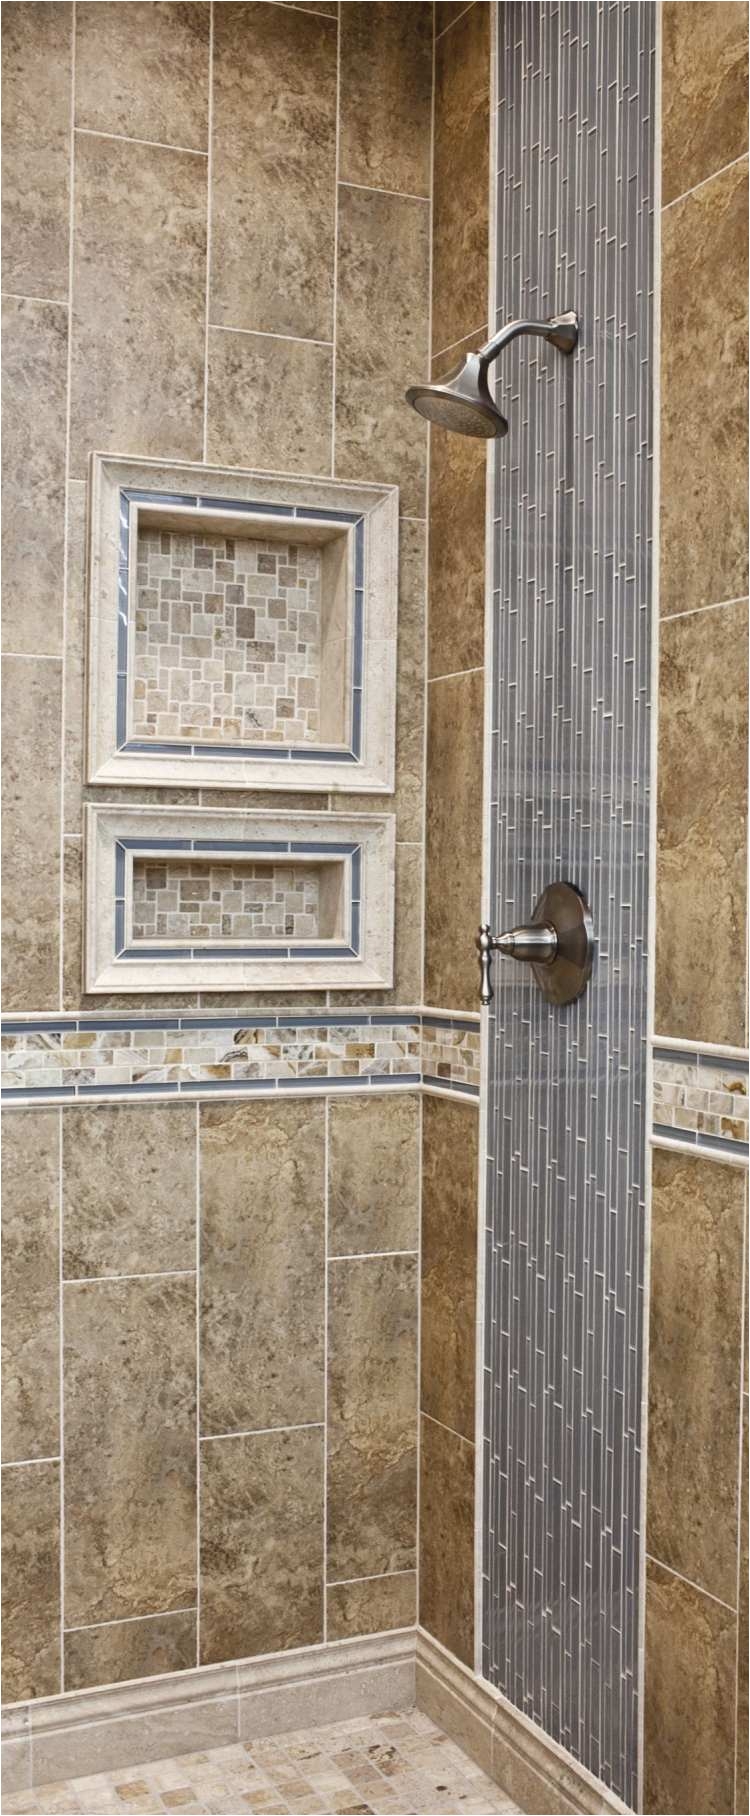 shower door splash guard best of vertical tiled shower design glass and ceramic wall tile of